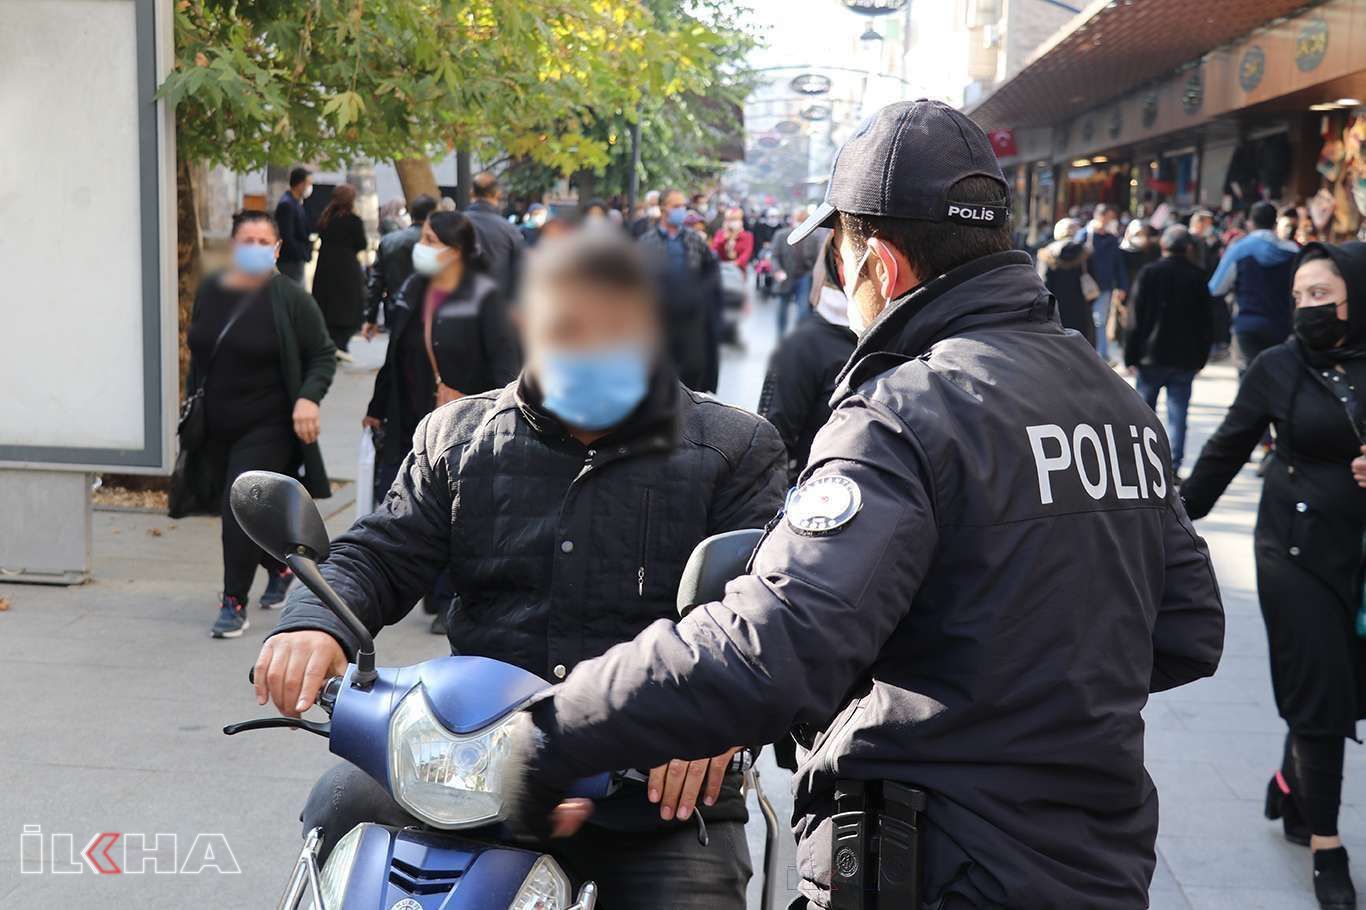 Gaziantep'te Covid-19 kurallarını ihlal eden 972 kişiye para cezası